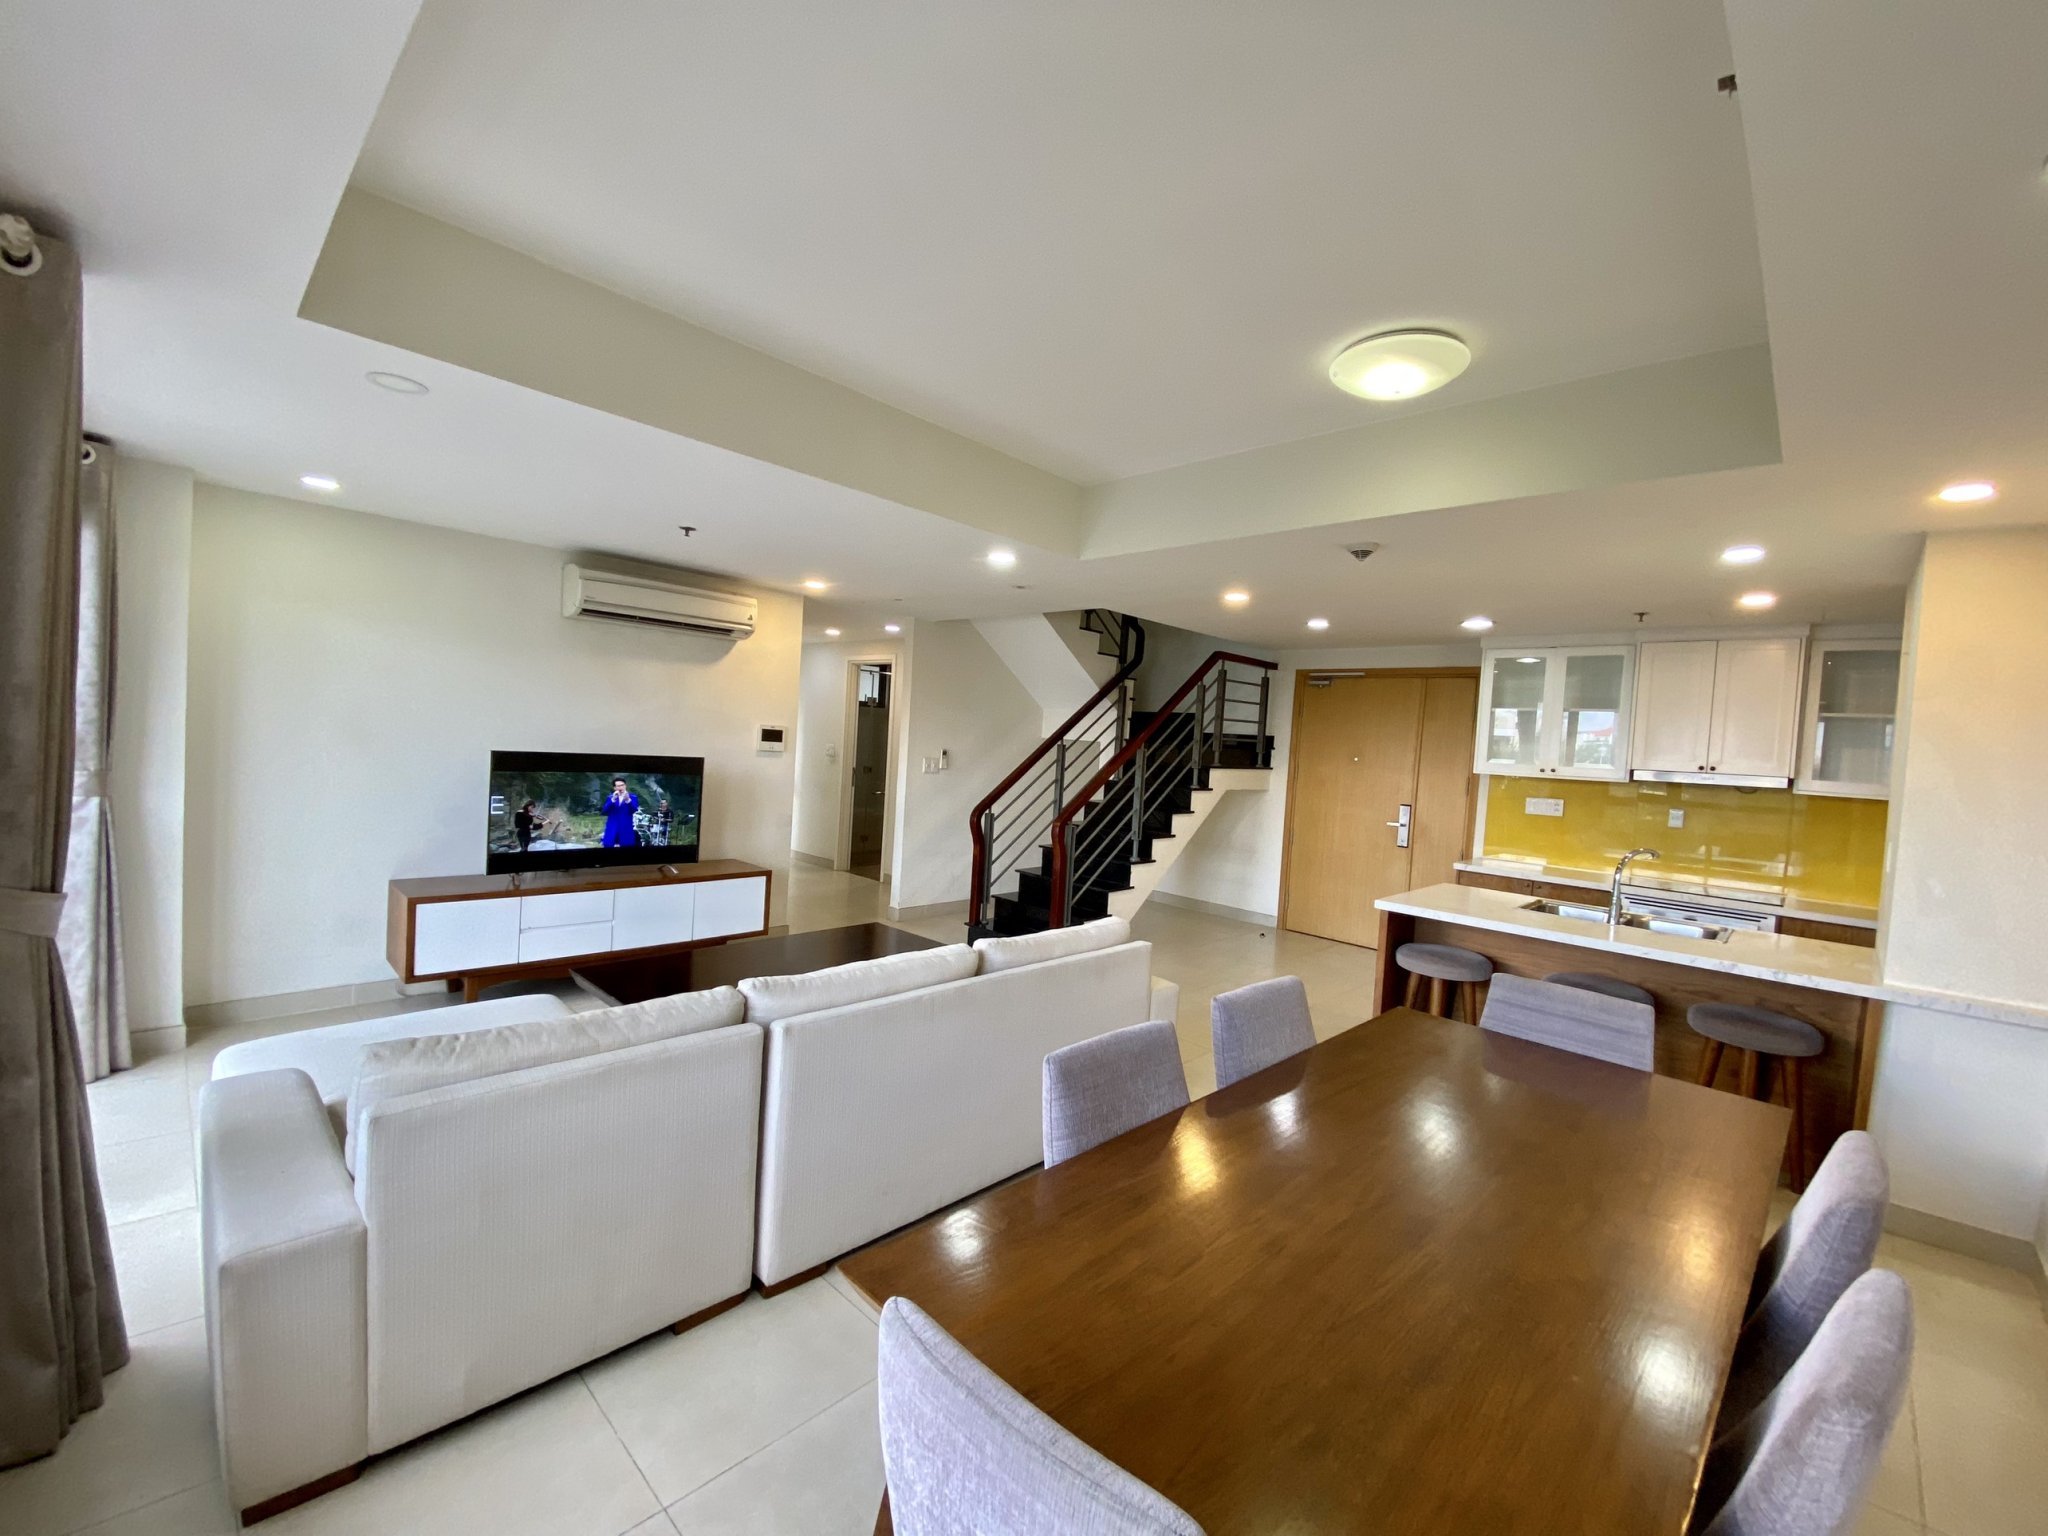 duplex Masteri Apartment for rent 177m2 50mil/mth, full furniture with 2 floors 4